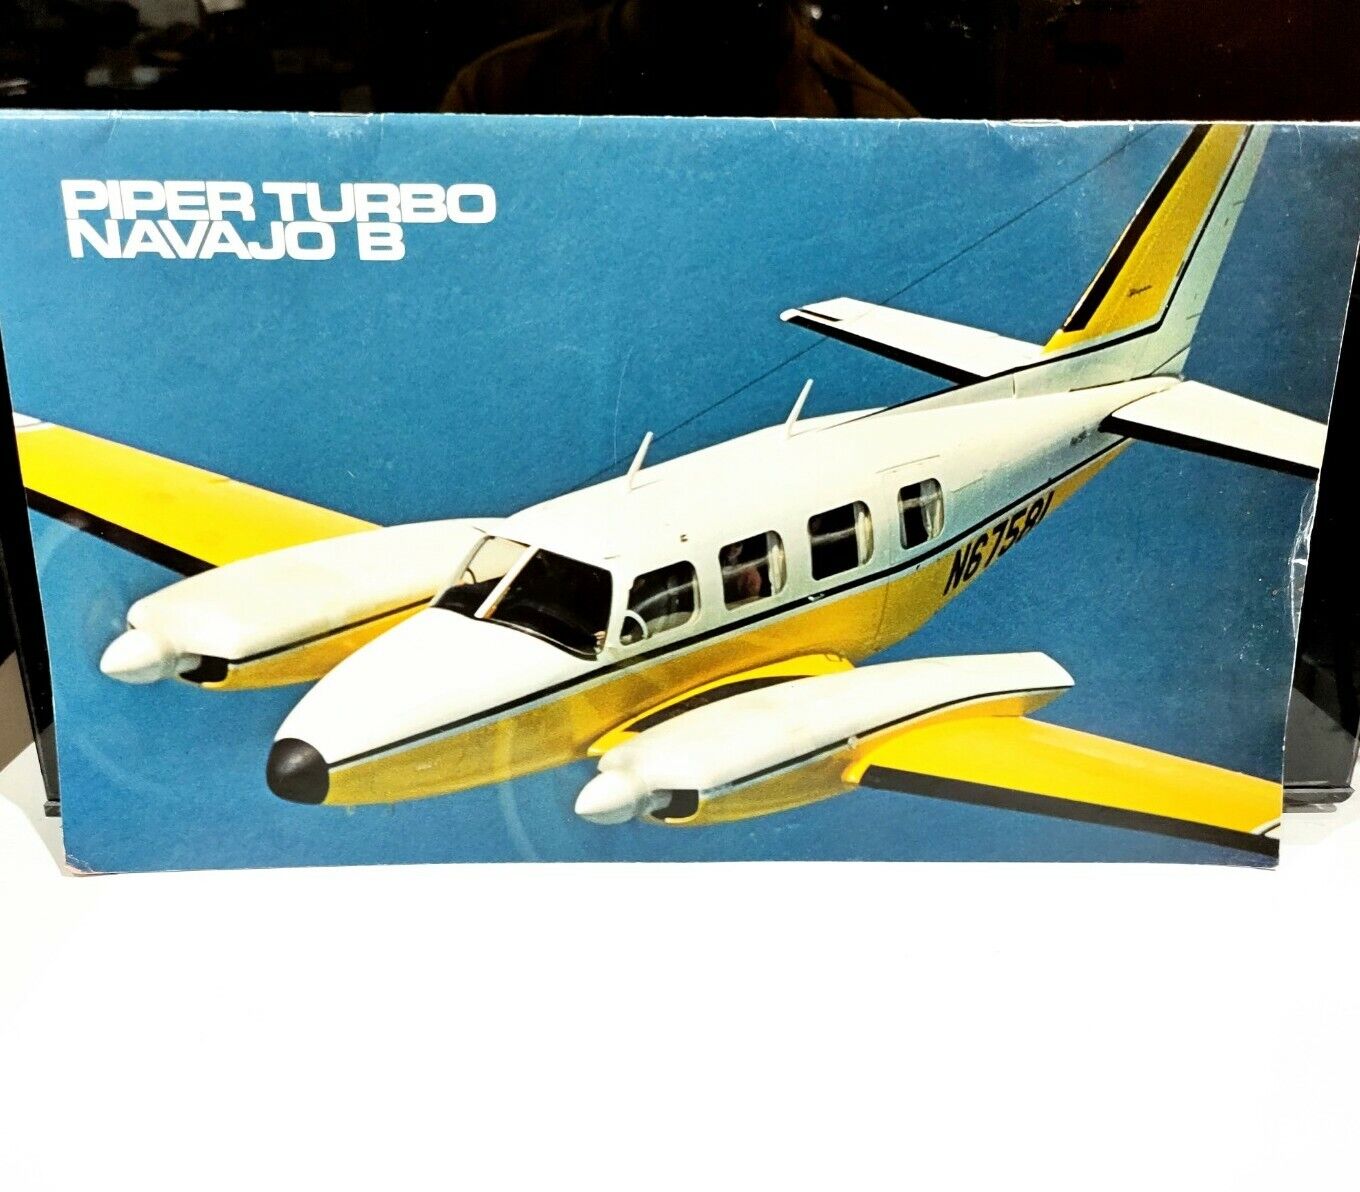 Piper Turbo Navajo B Sales Promo Aircraft Air Booklet 1999